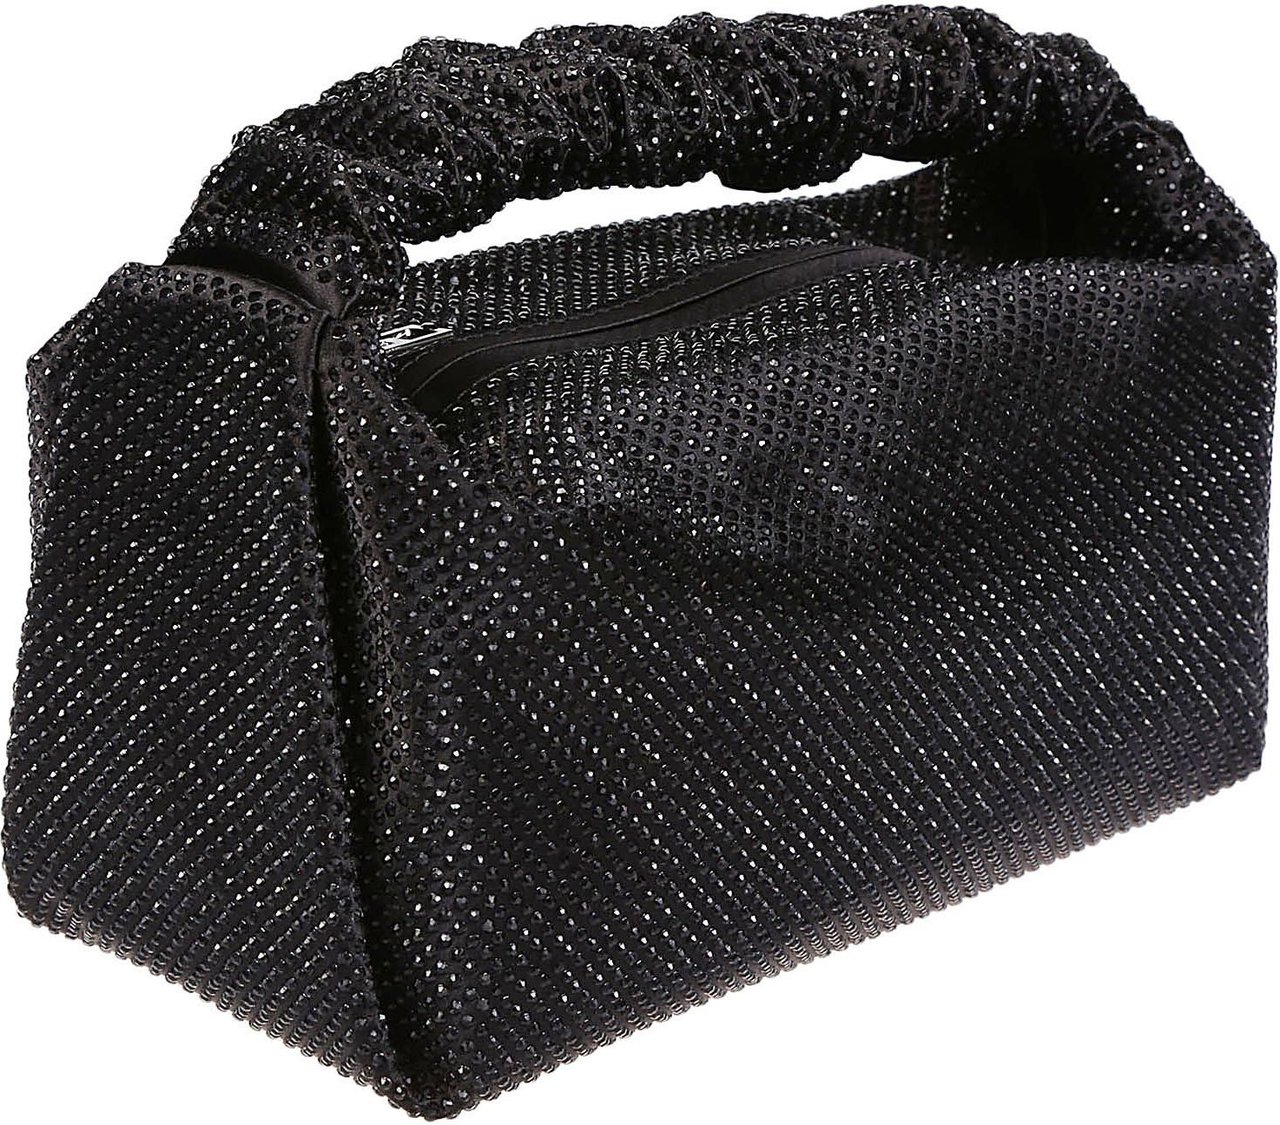 Alexander Wang Scrunchie Mini Bag Black Zwart